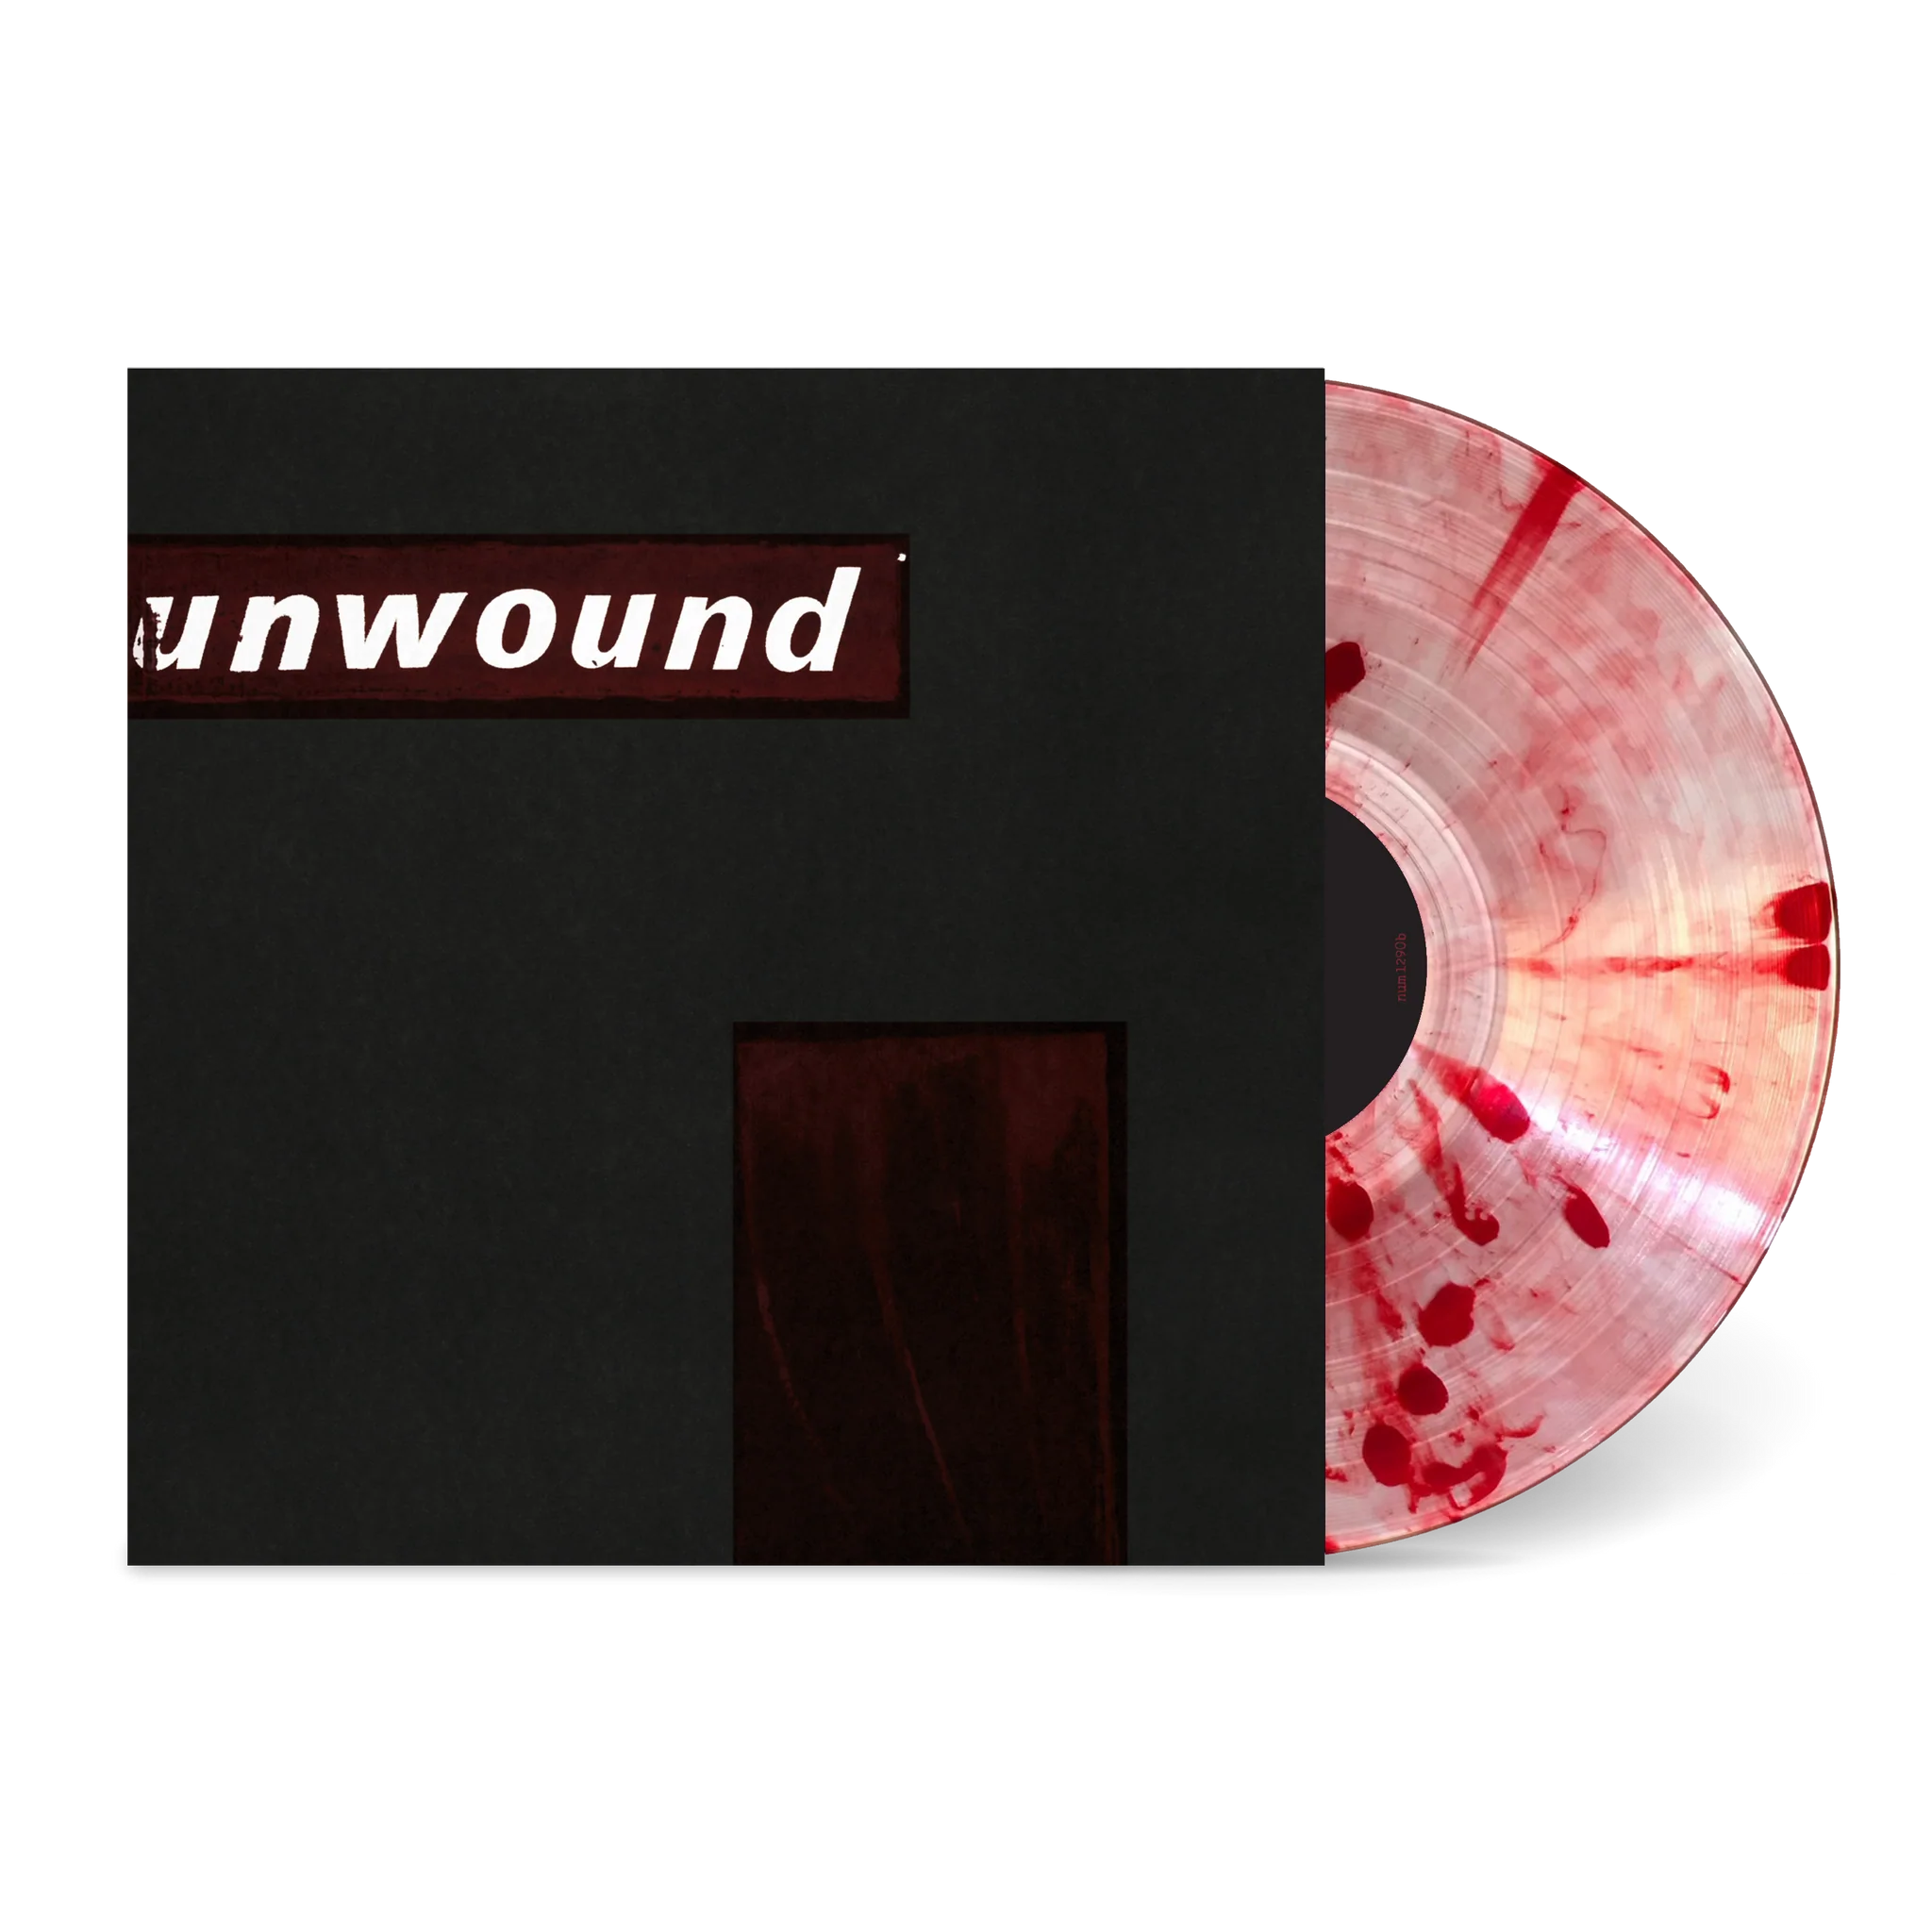 Unwound - Unwound: Limited Edition Rising Blood Vinyl LP.